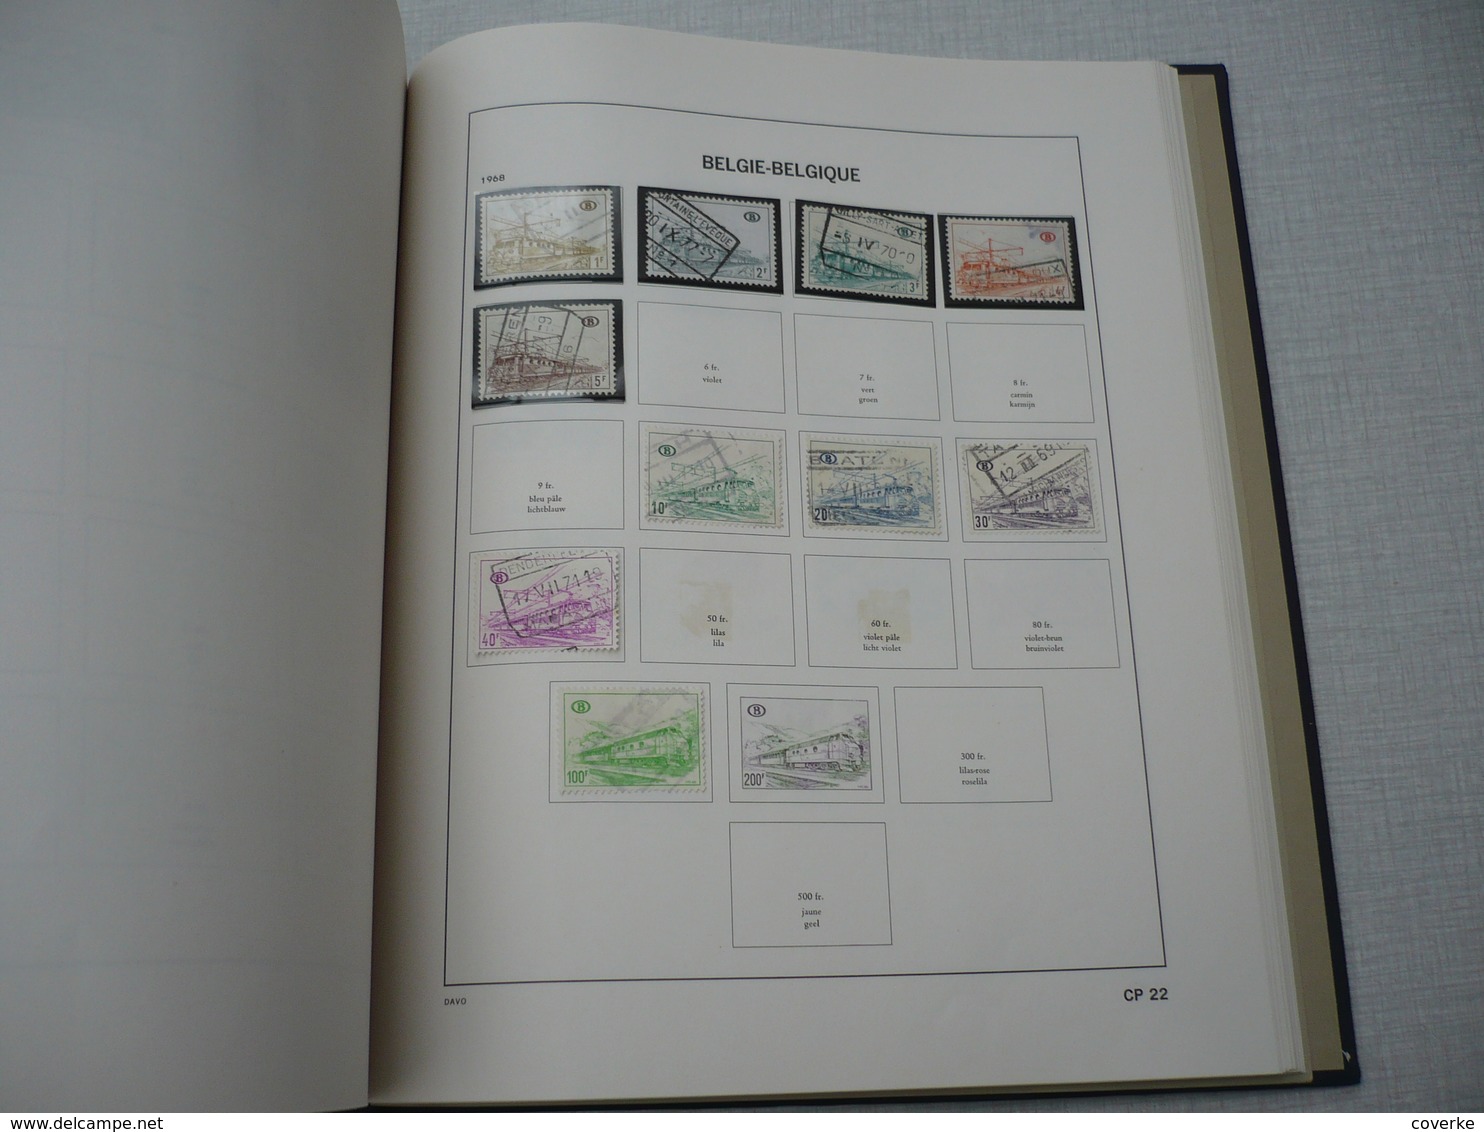 verzameling in gemengde kwaliteit zowel xx , scharnier of gestempeld , 1959 - 1982 , vniet al de fotos staan er op .